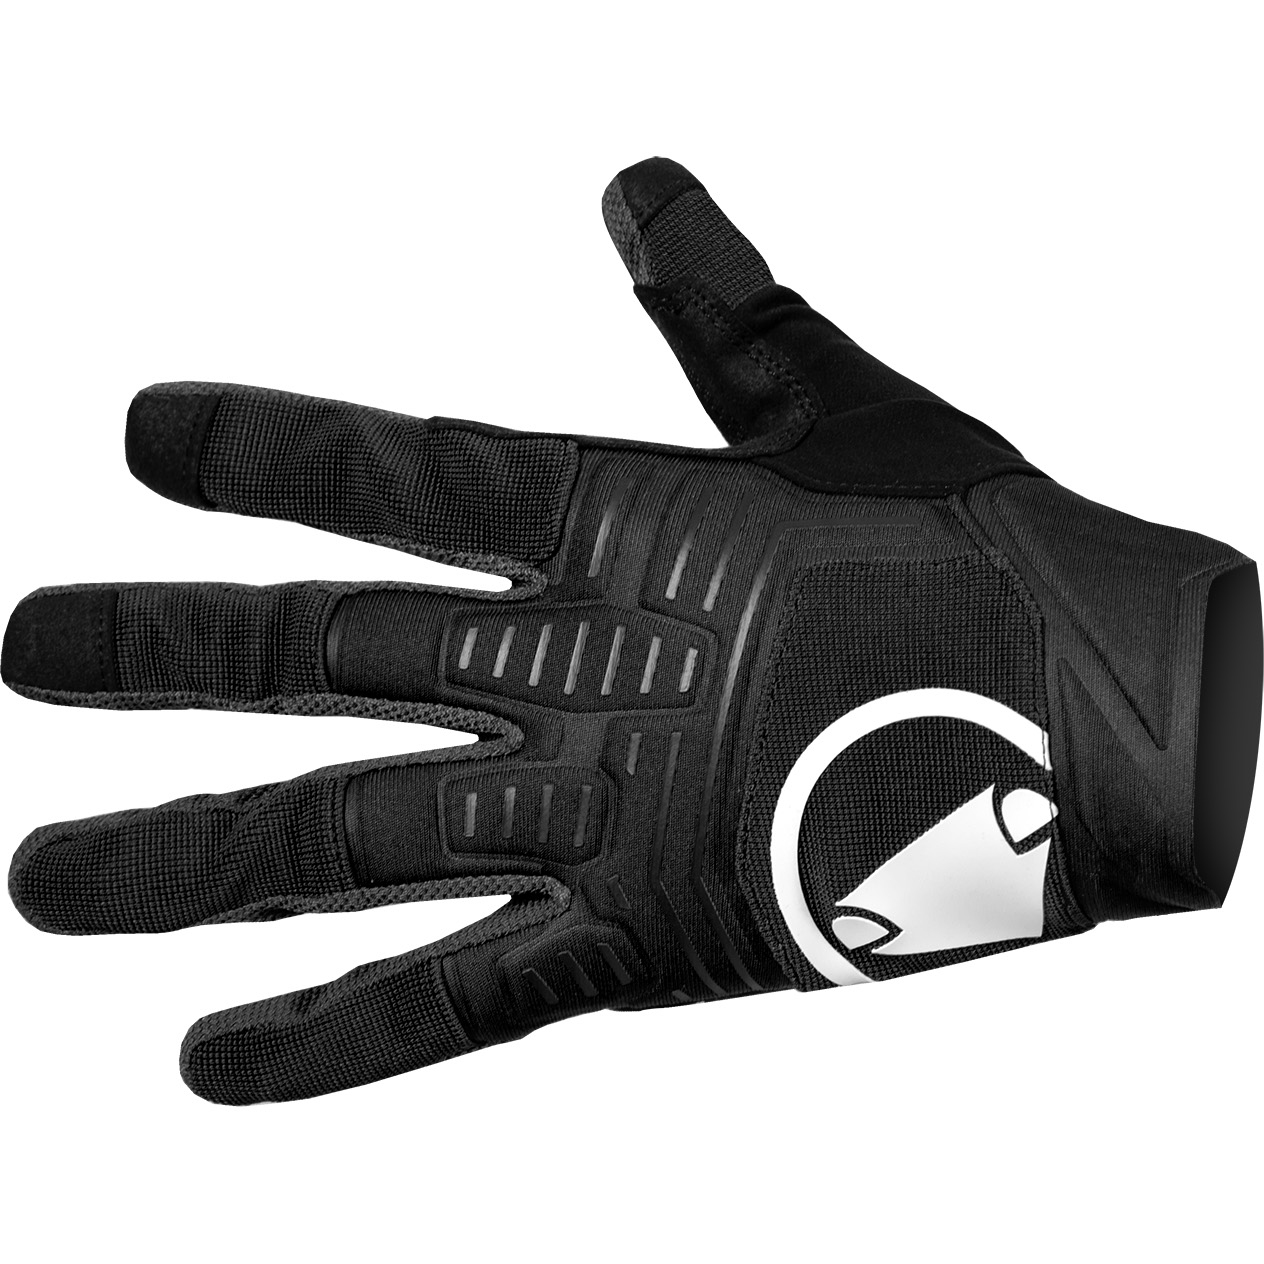 Produktbild von Endura SingleTrack II Vollfinger-Handschuhe - schwarz